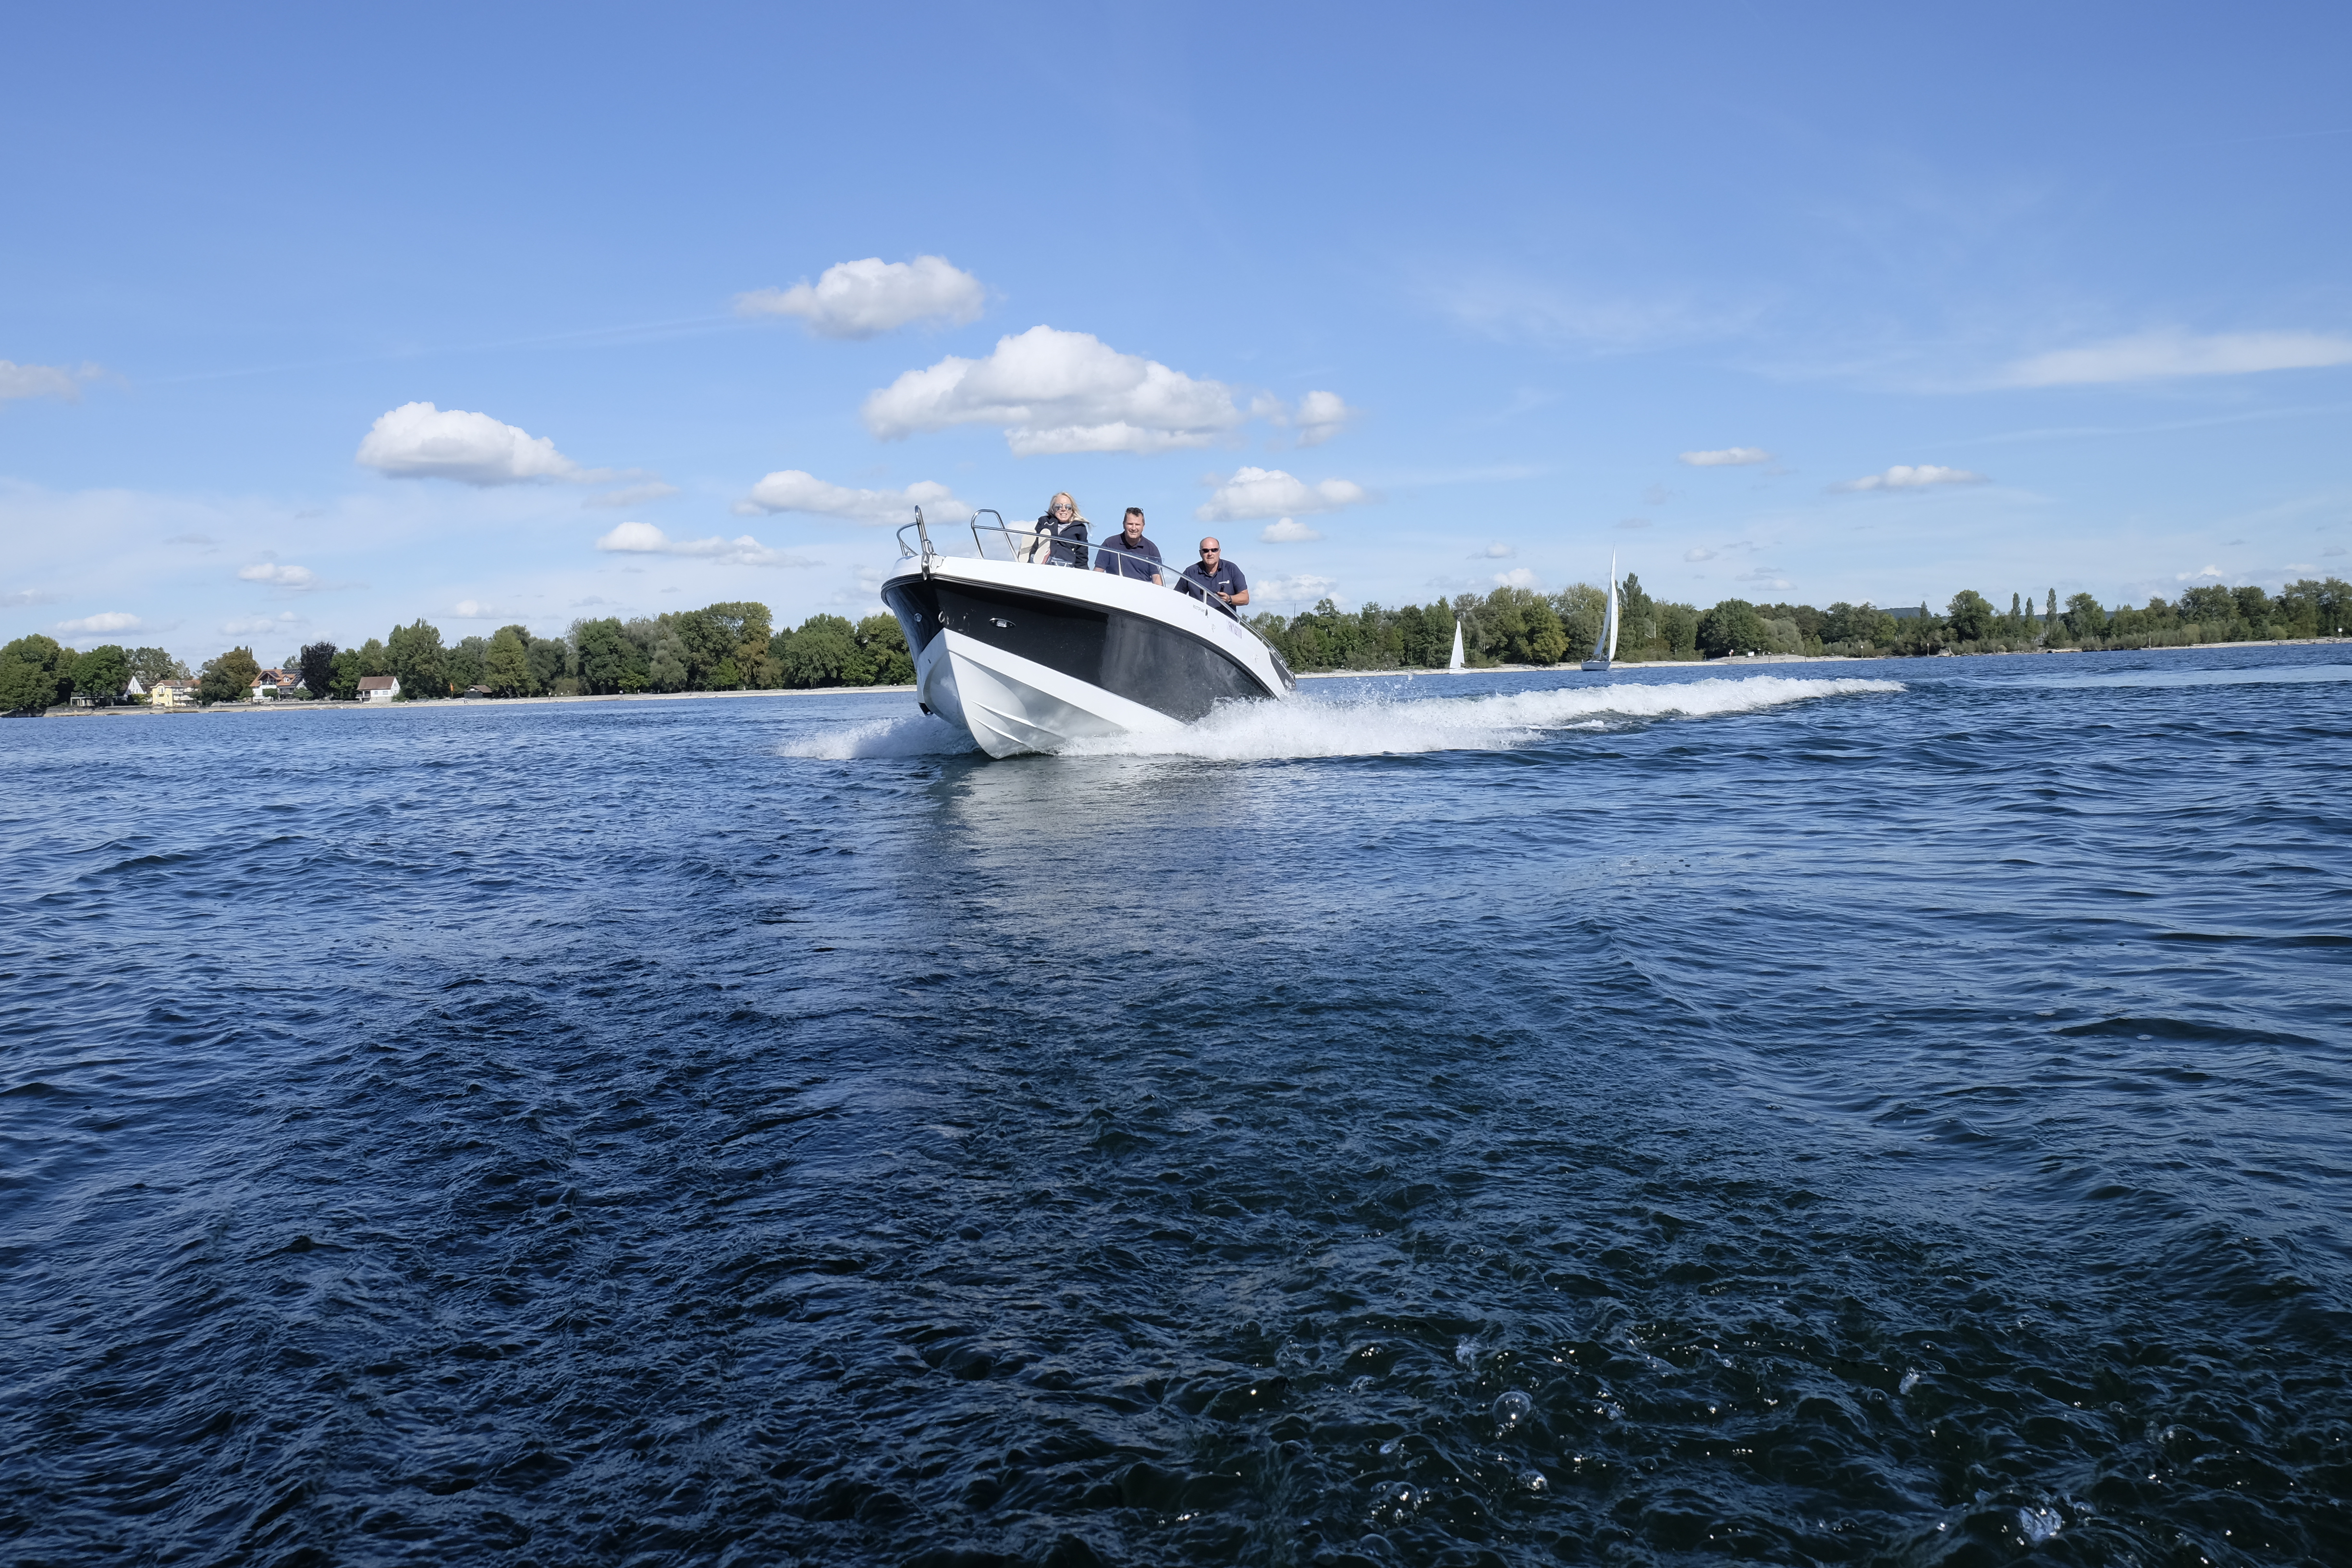 Vermietung Motorboot Coaster 640 (6,40m x 2,50 mit Kabine) für Tagestouren oder Wochenende - 1 Tag